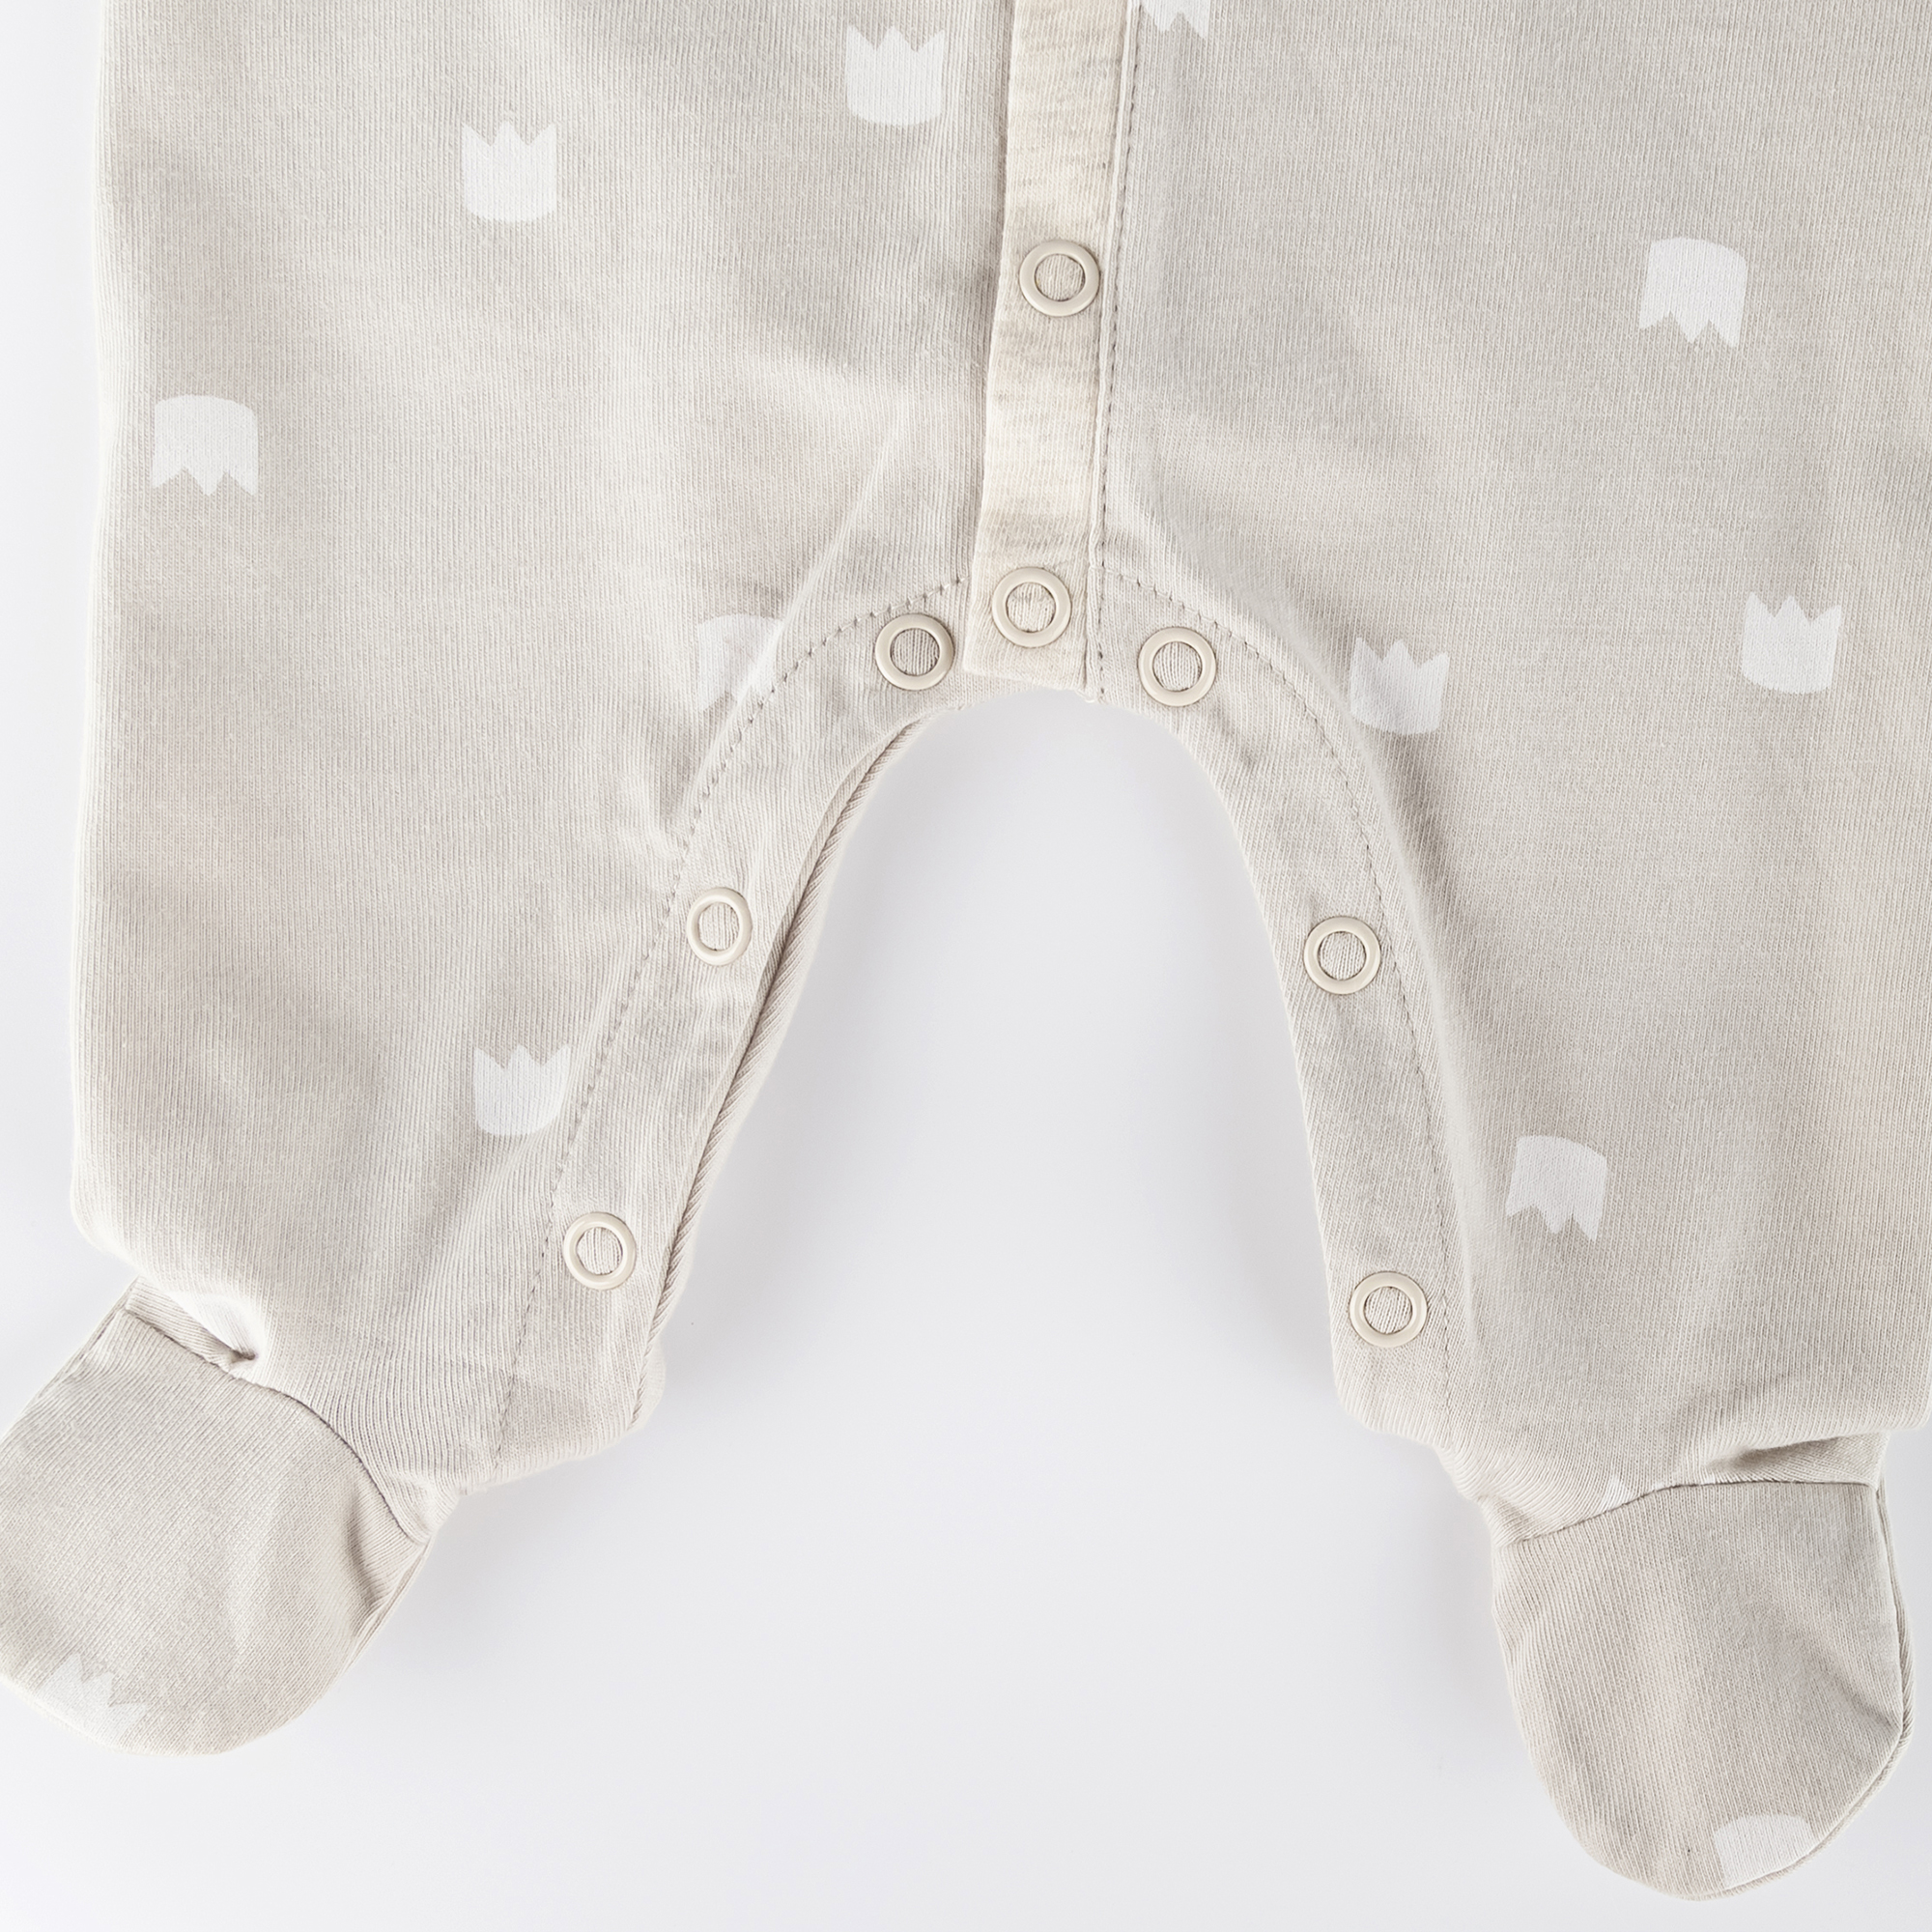 Newborn baby footed onesie romper beige, foldover mittens